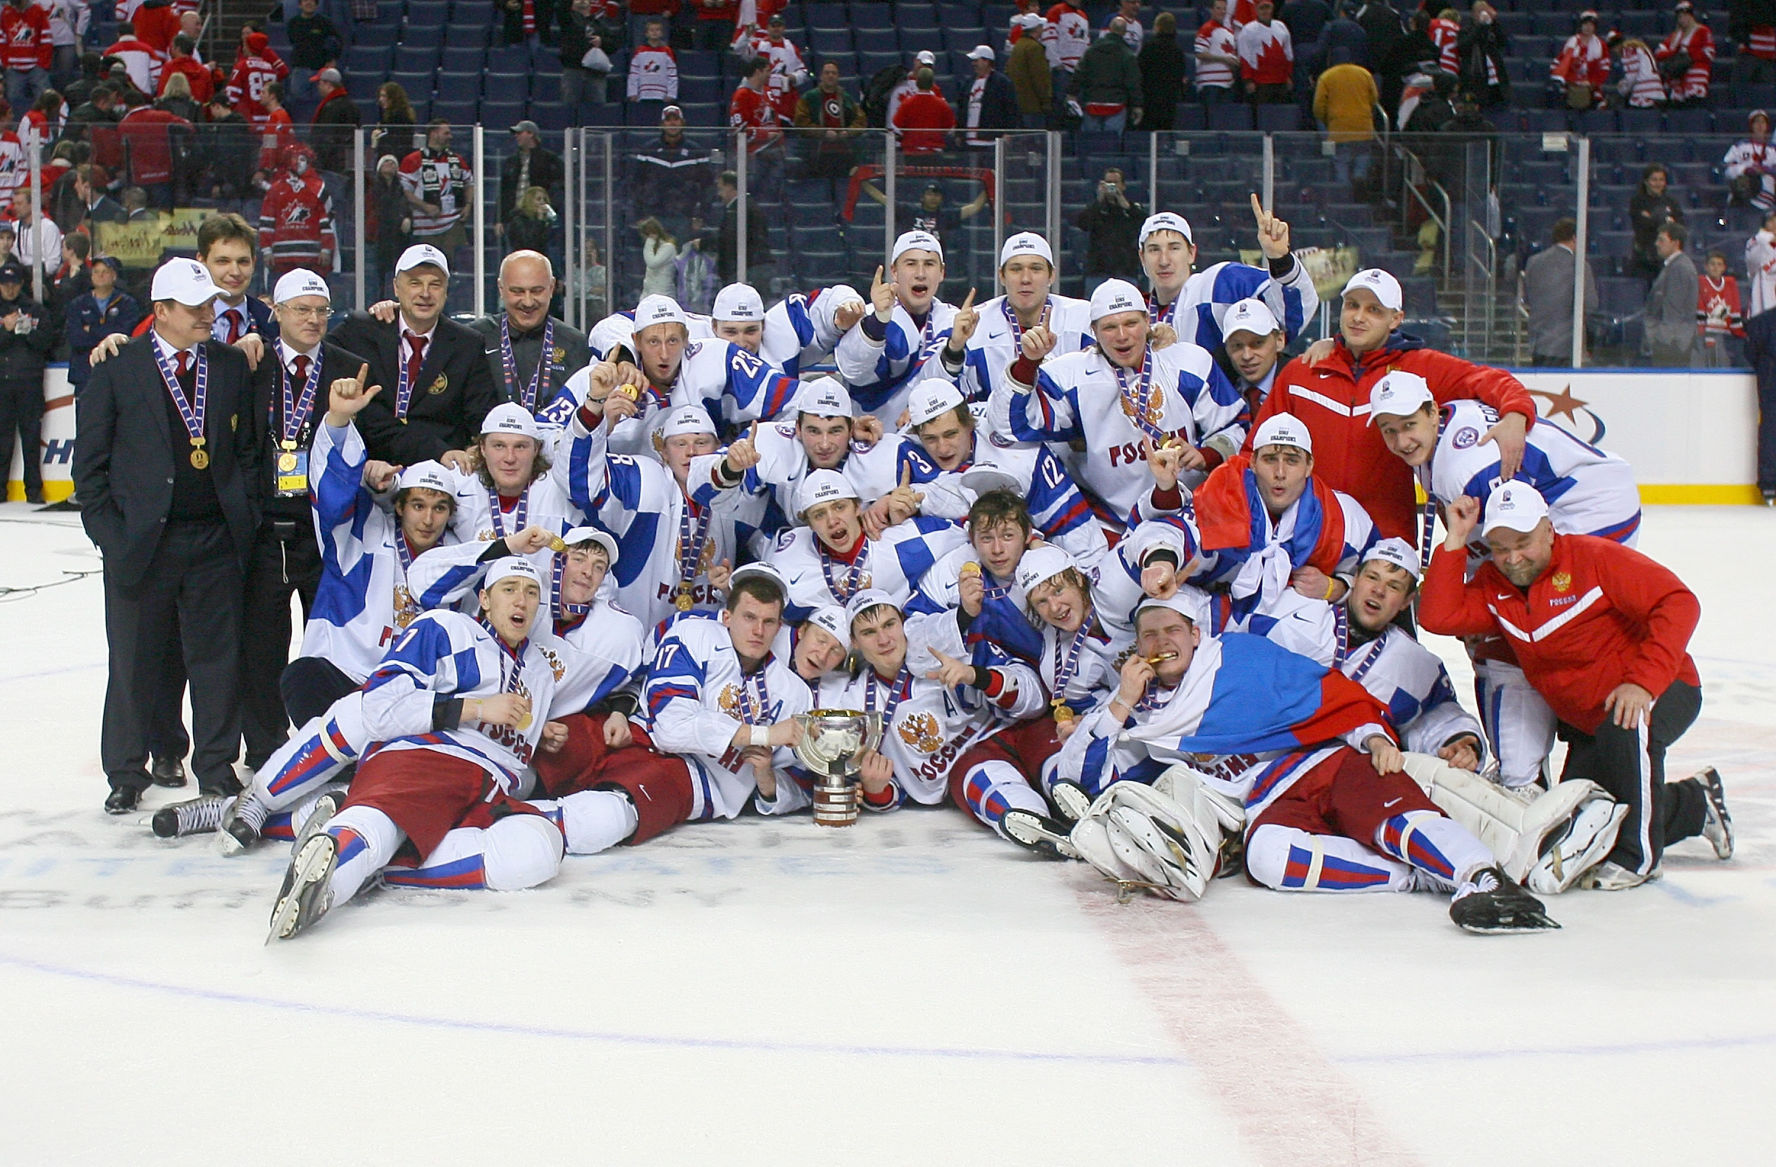 Midget aaa hockey championships 2008